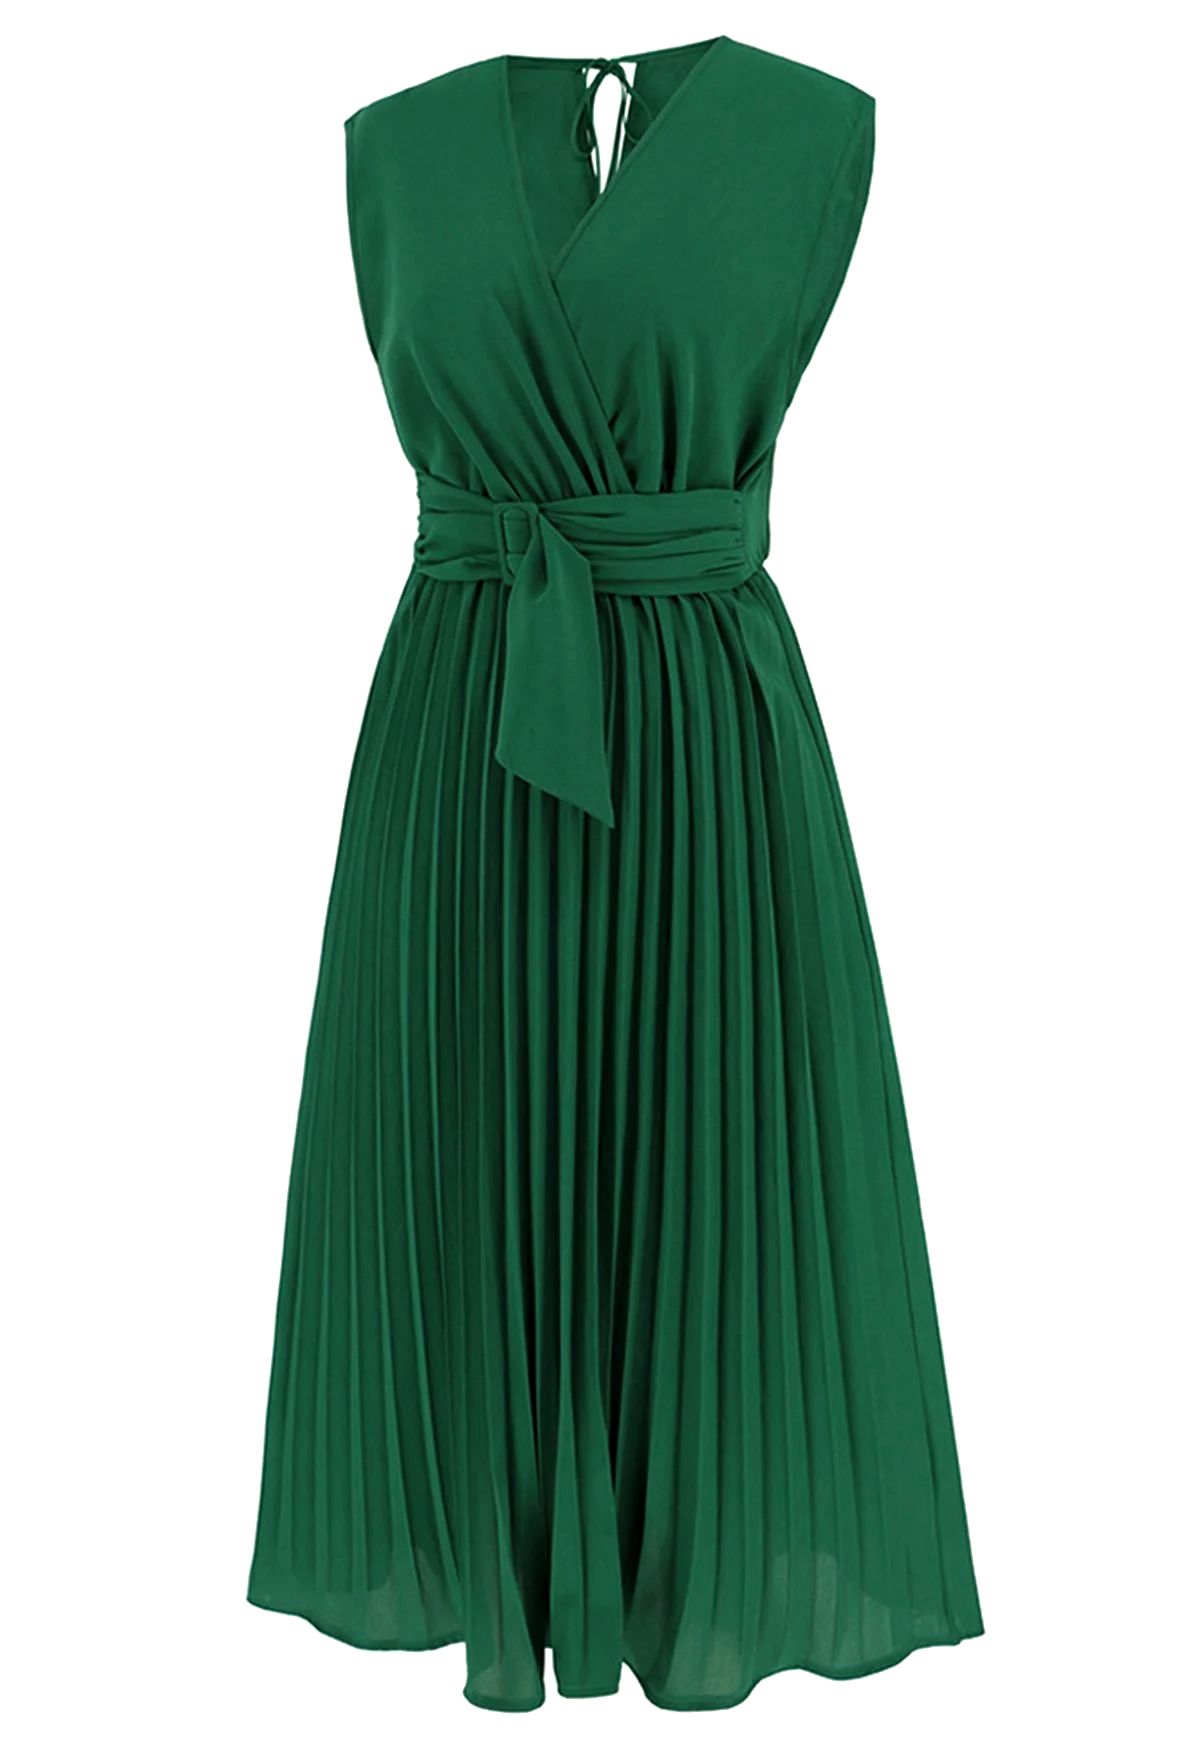 Schärpenverziertes, plissiertes, ärmelloses Wickelkleid in Grün